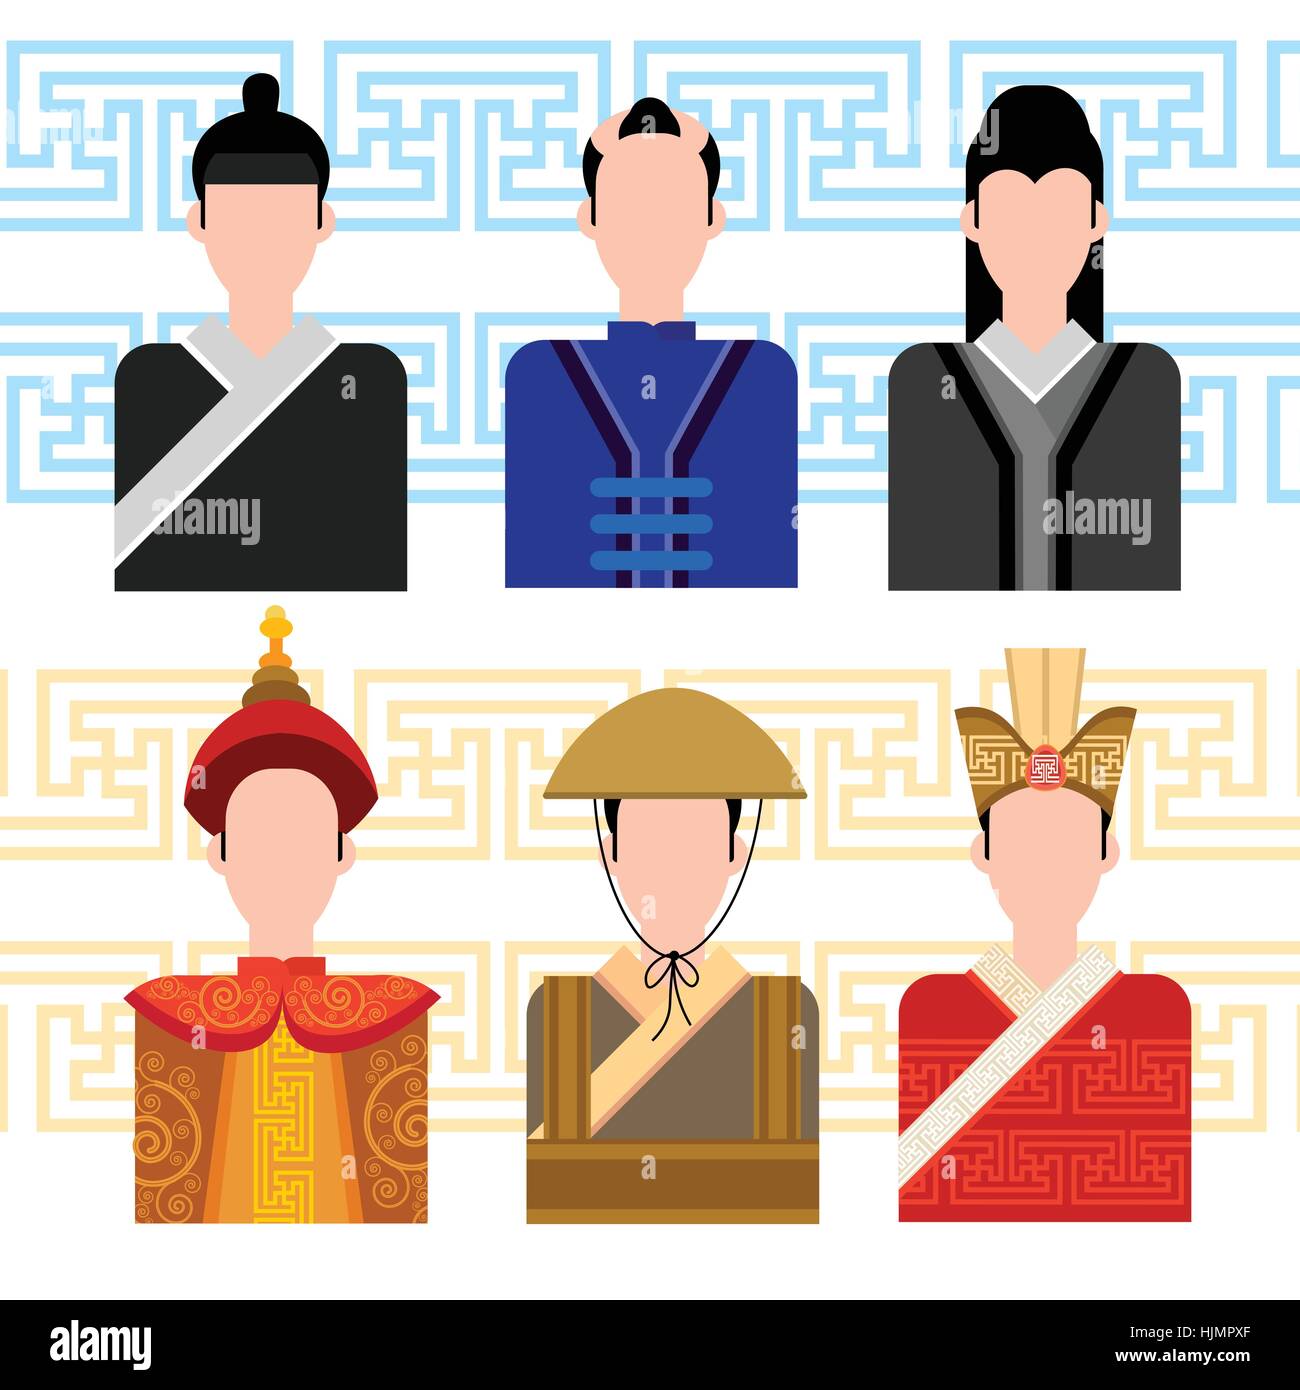 L'Homme asiatique, chinoise profil masculin Social Network Icon Set Illustration de Vecteur